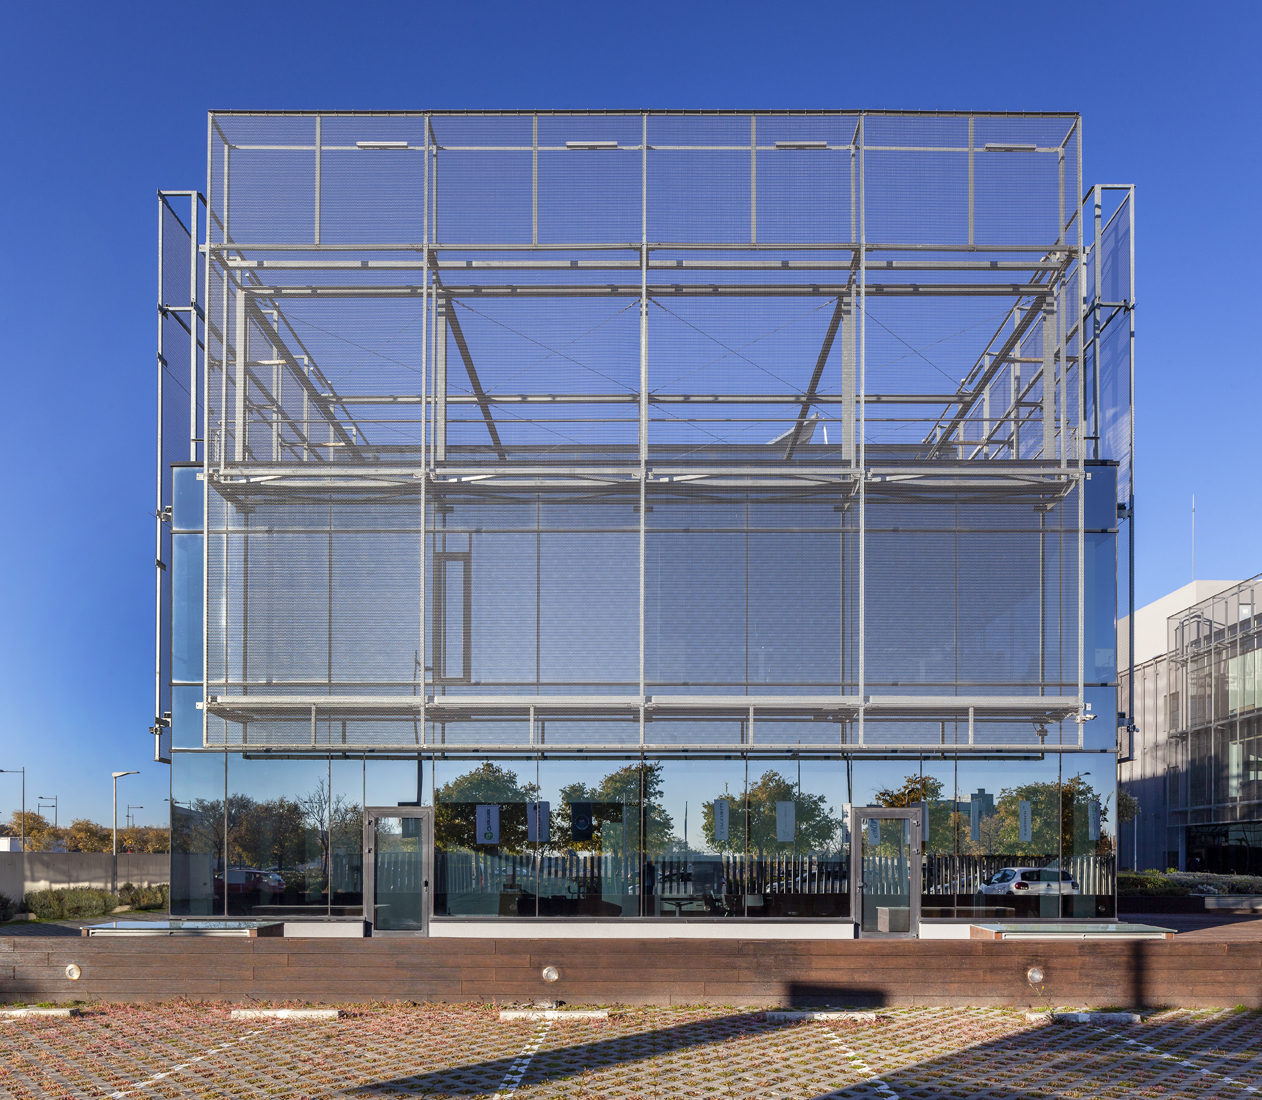 Codina Architectural Edificio Charmex metal mesh